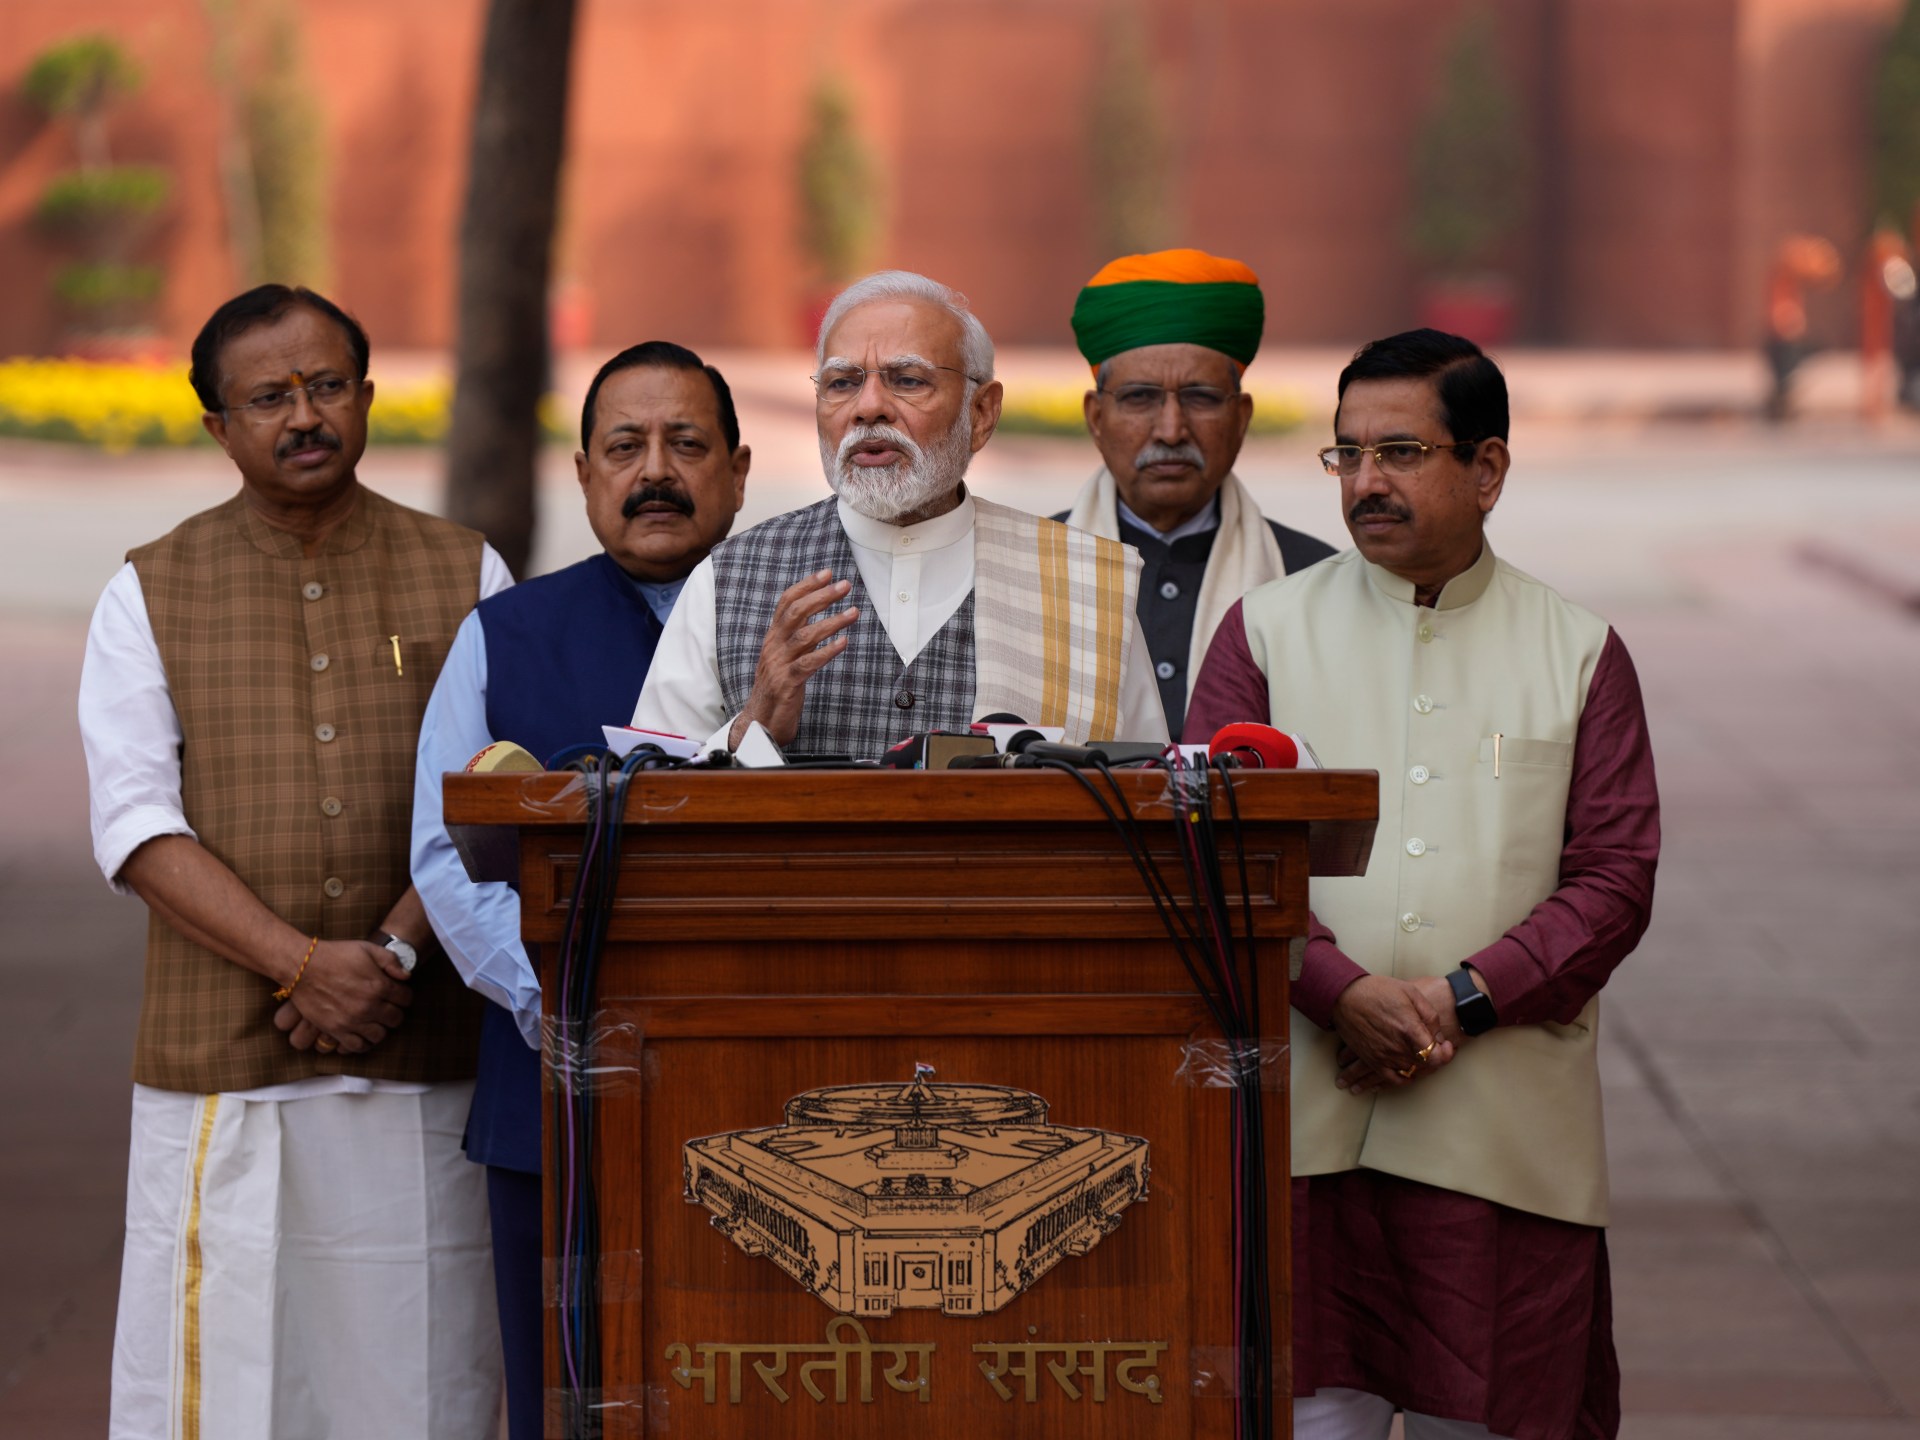 Quatre raisons pour lesquelles le parti Bharatiya Janata de Modi a remporté des élections régionales clés en Inde |  Nouvelles sur les élections